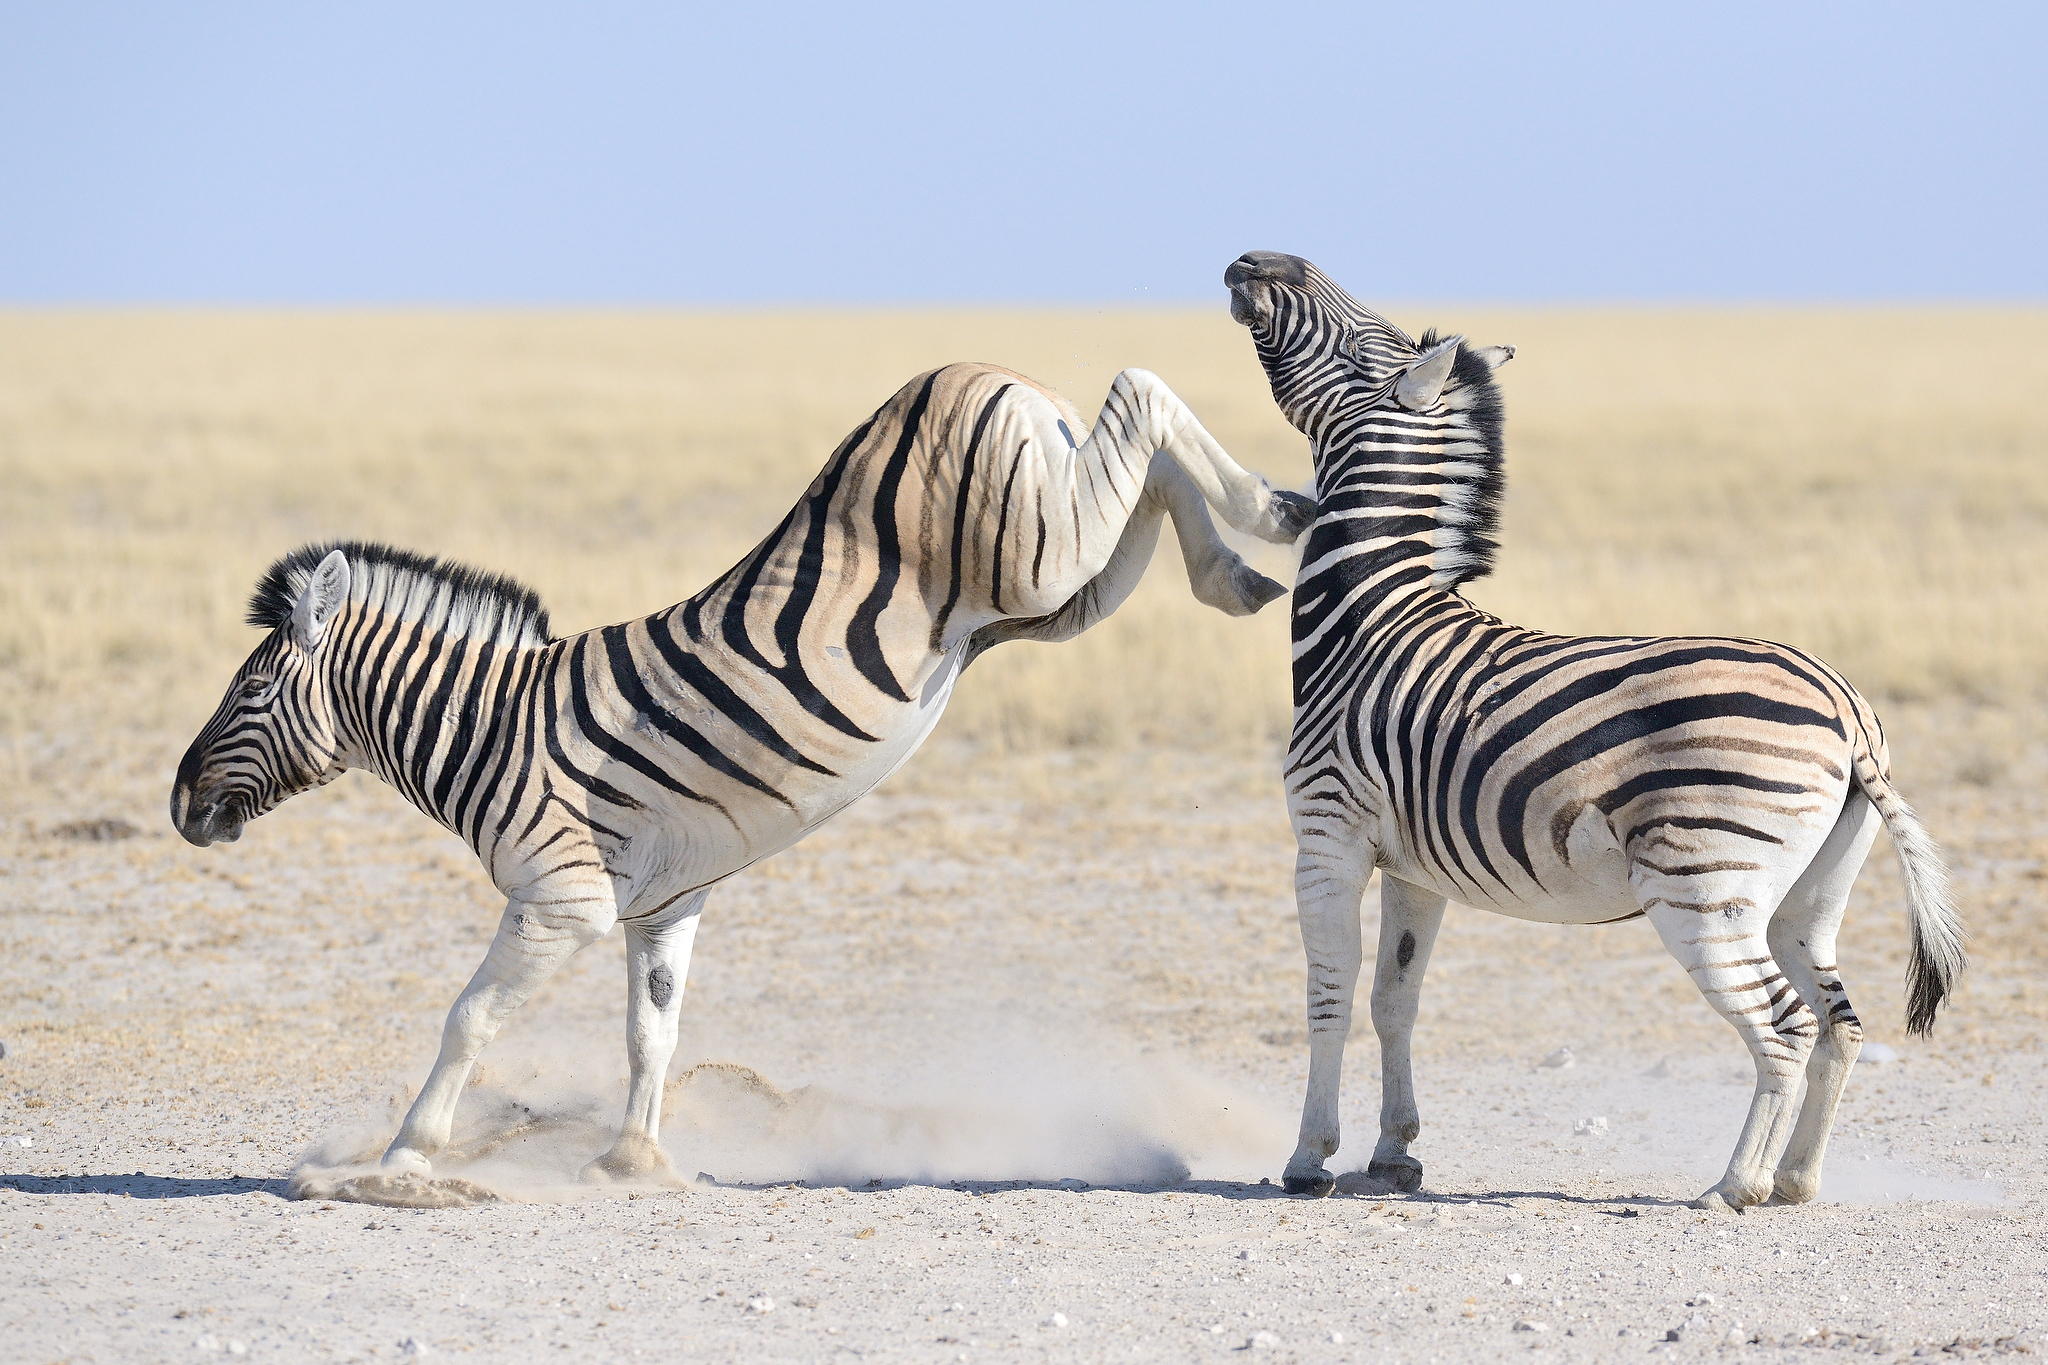 Zebra Fights Zebra In Wild Waterhole Battle